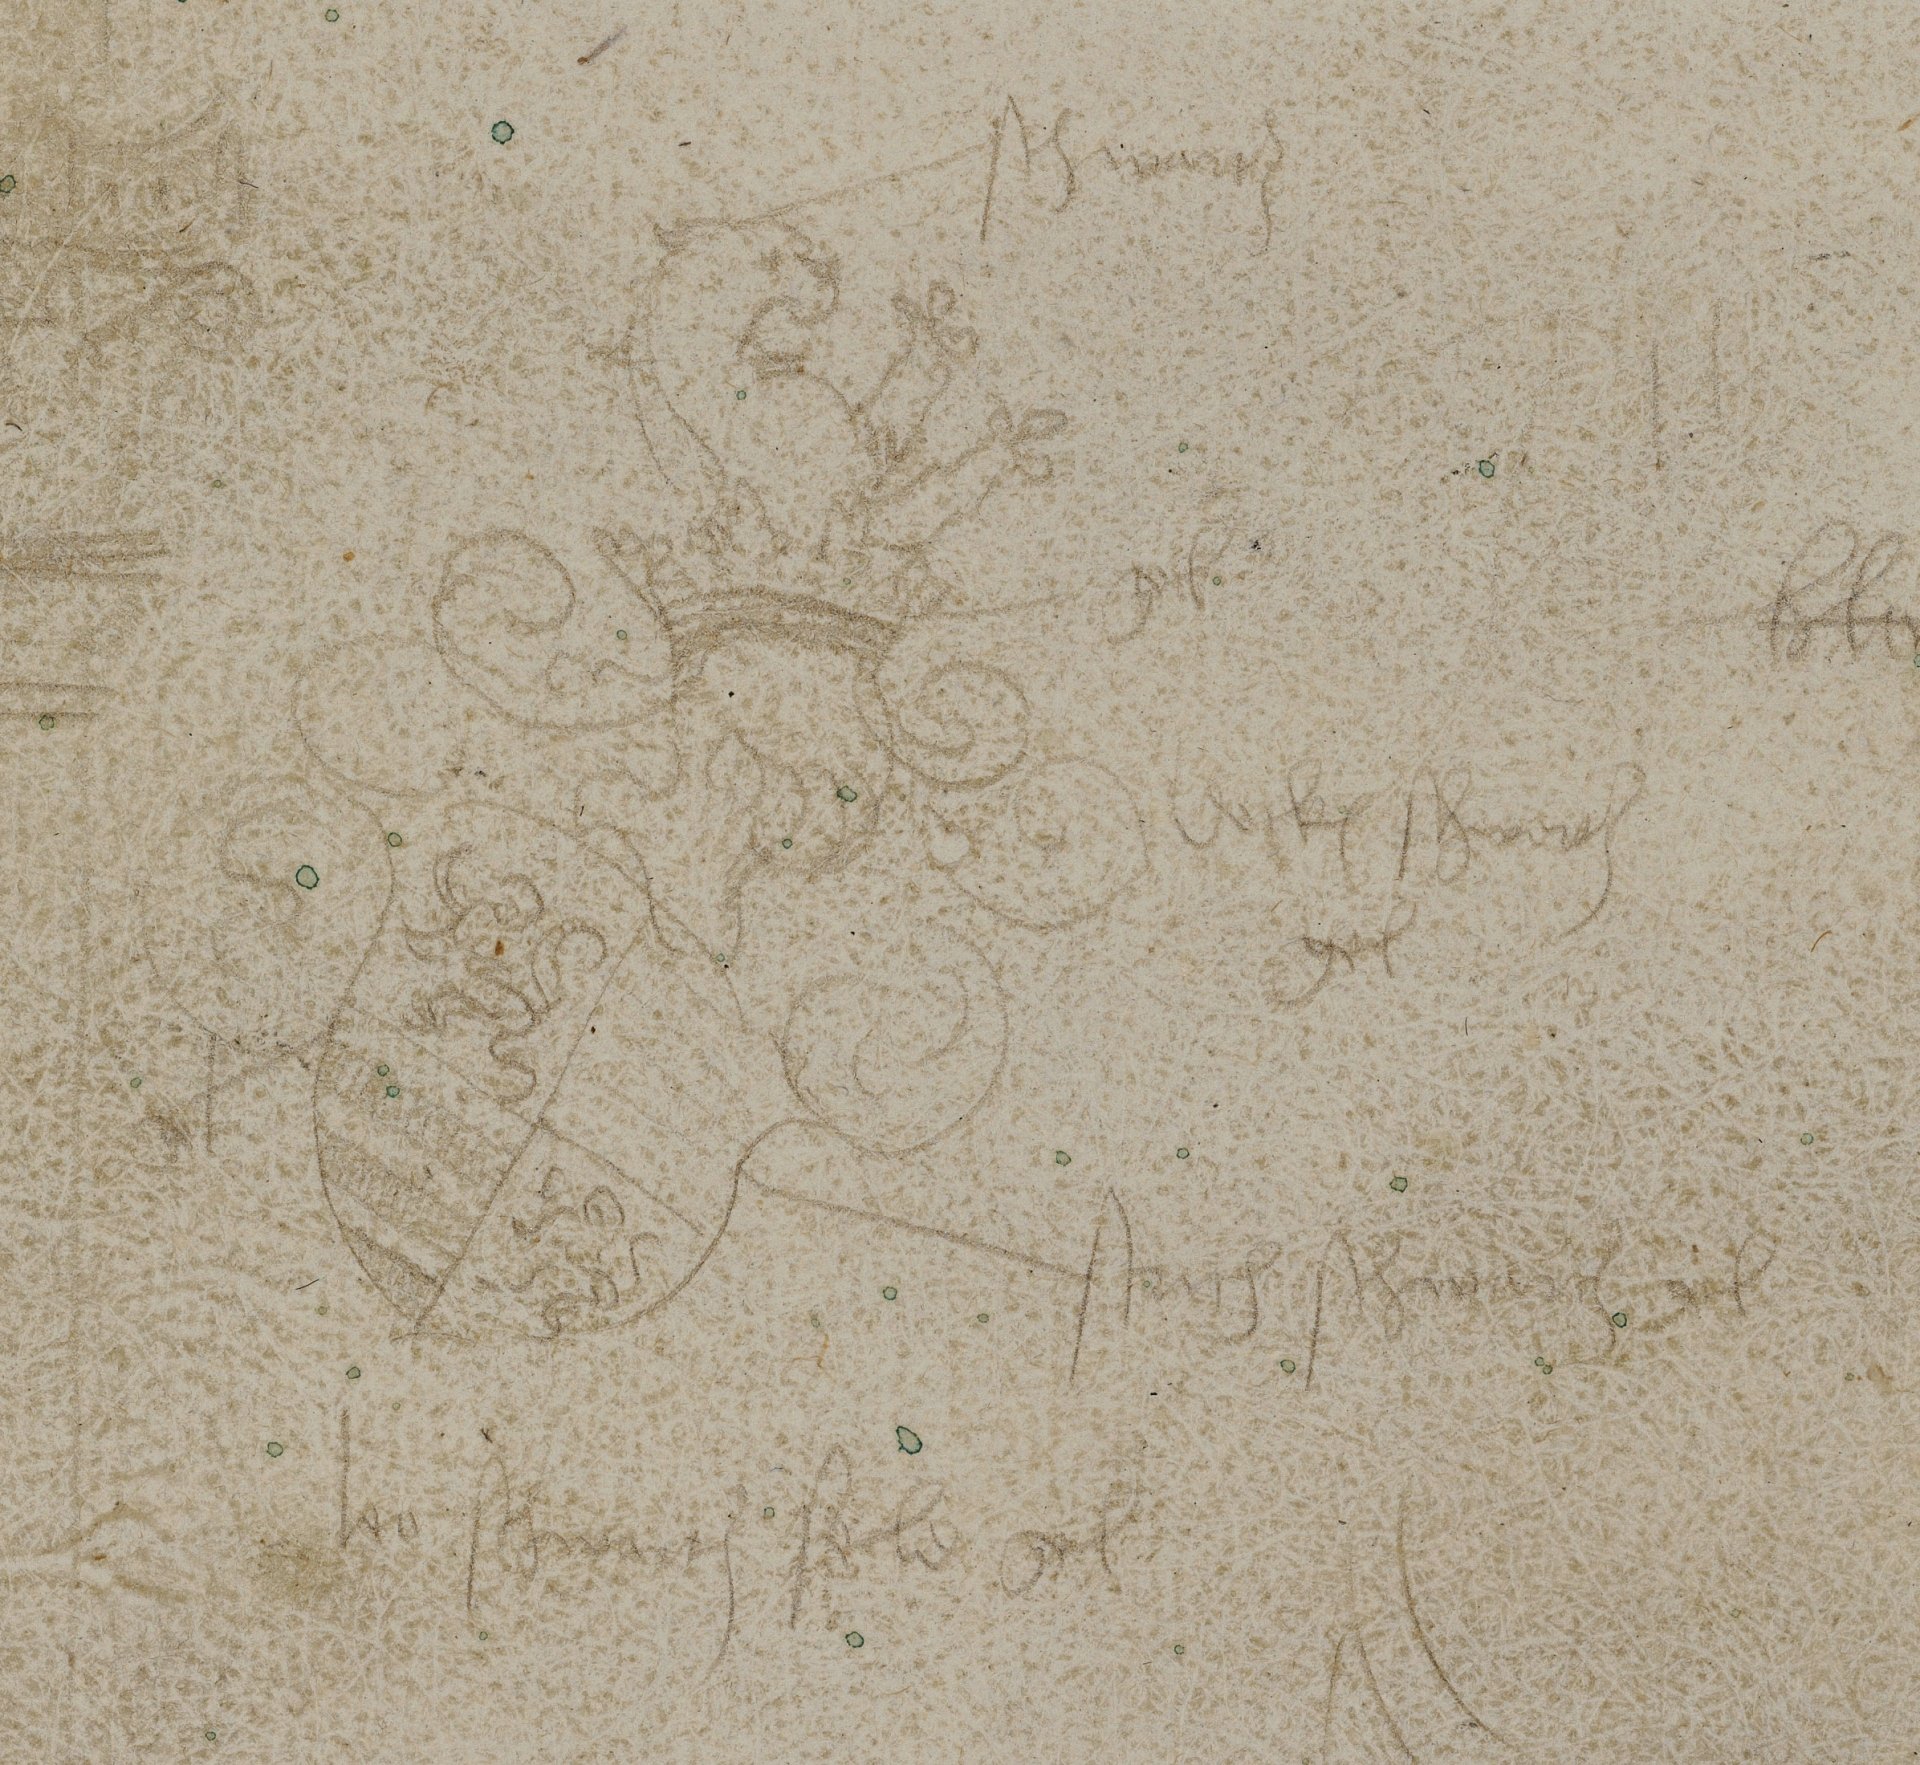 Abbildung einer Zeichnung aus dem Karlsruher Skizzenbuch des Renaissance-Künstlers Hans Baldung Grien. Zu sehen ist die Skizze eines Wappens.